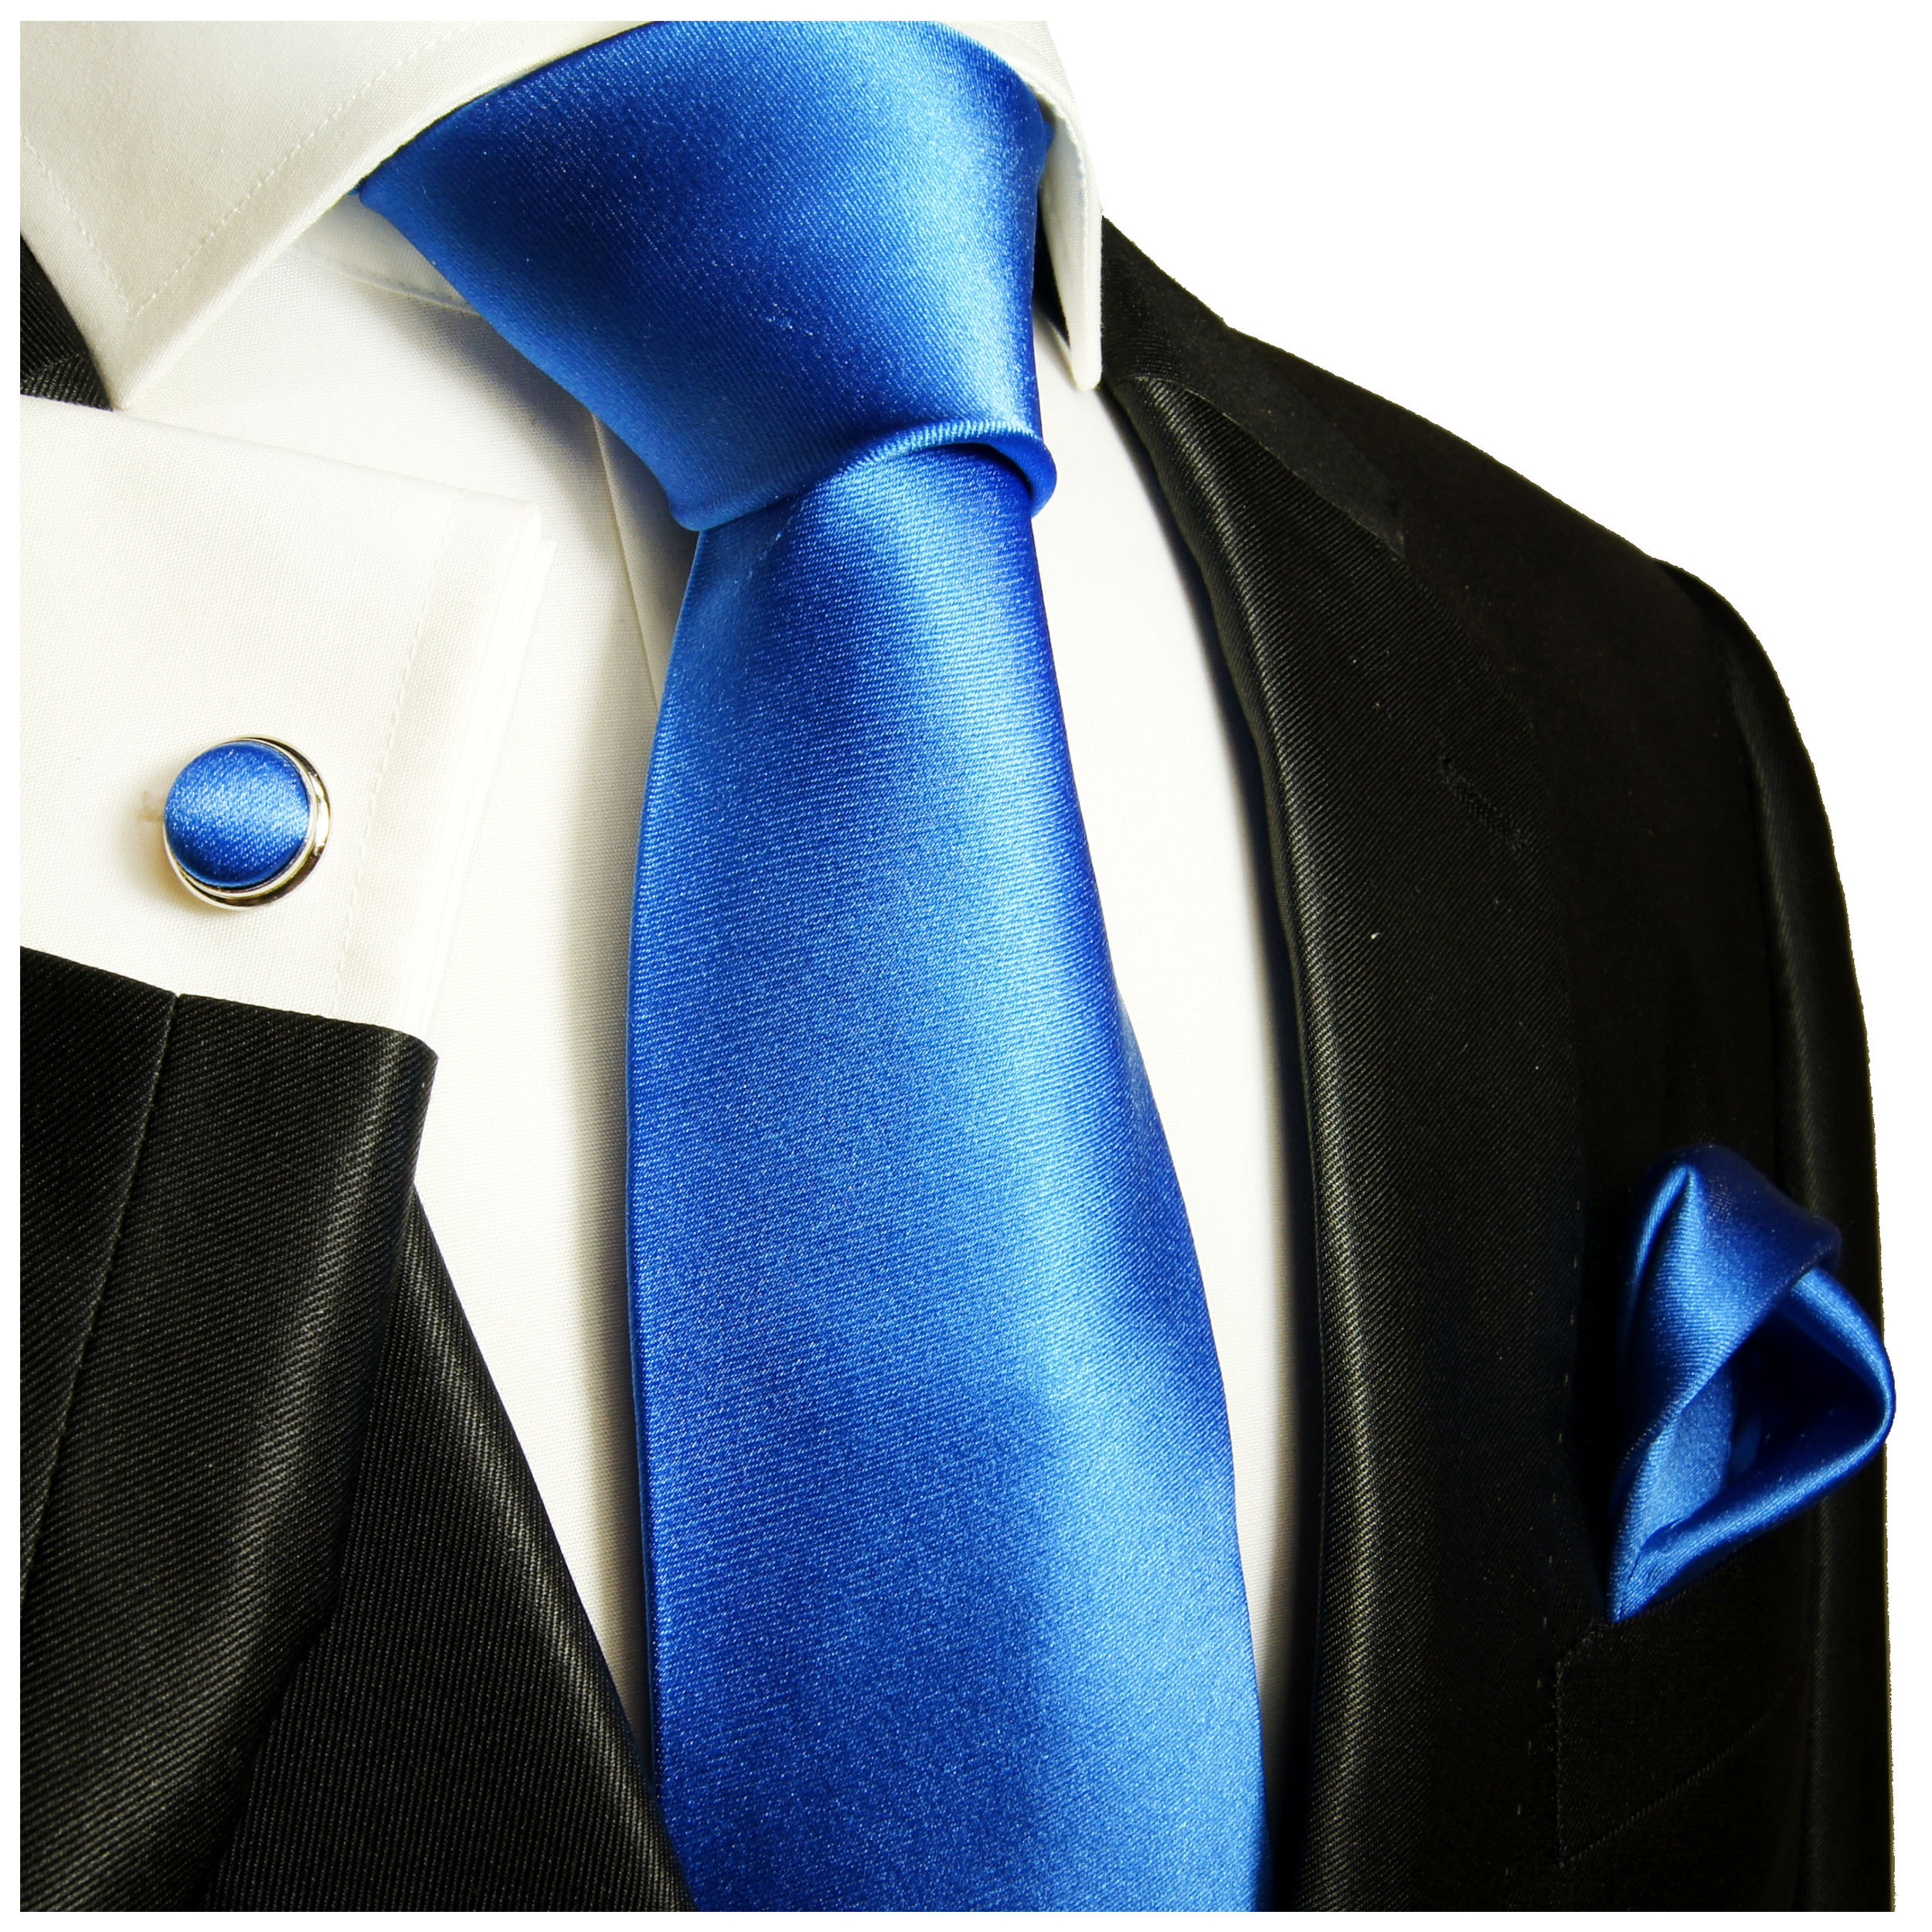 TigerTie Designer Seidenkrawatte orange blau royal silber gestreift Krawatte Seide Silk